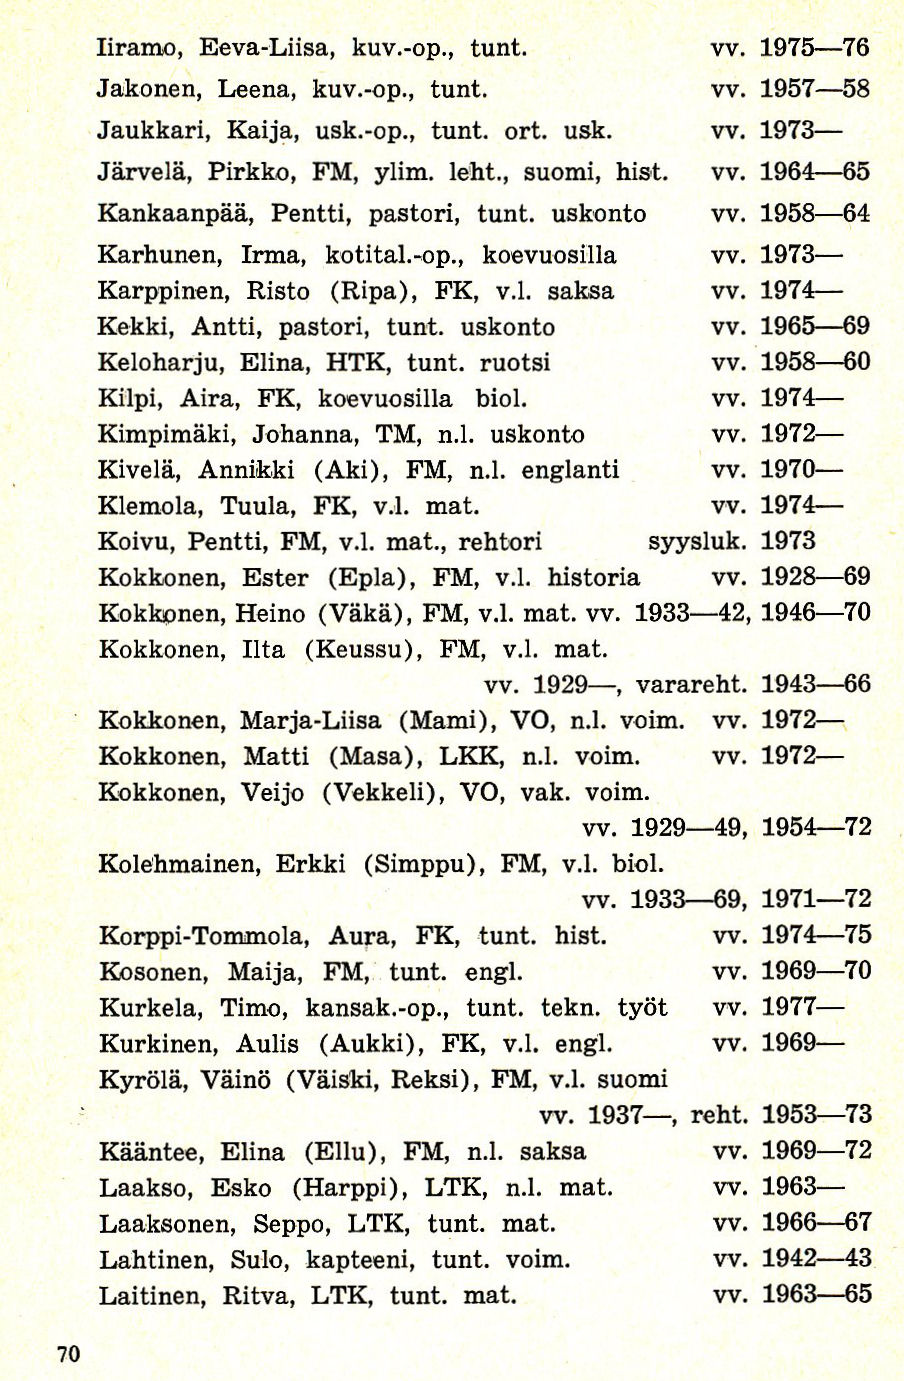 Opettajien ja henkilökunnan luettelo 1928-1978 sivu 2